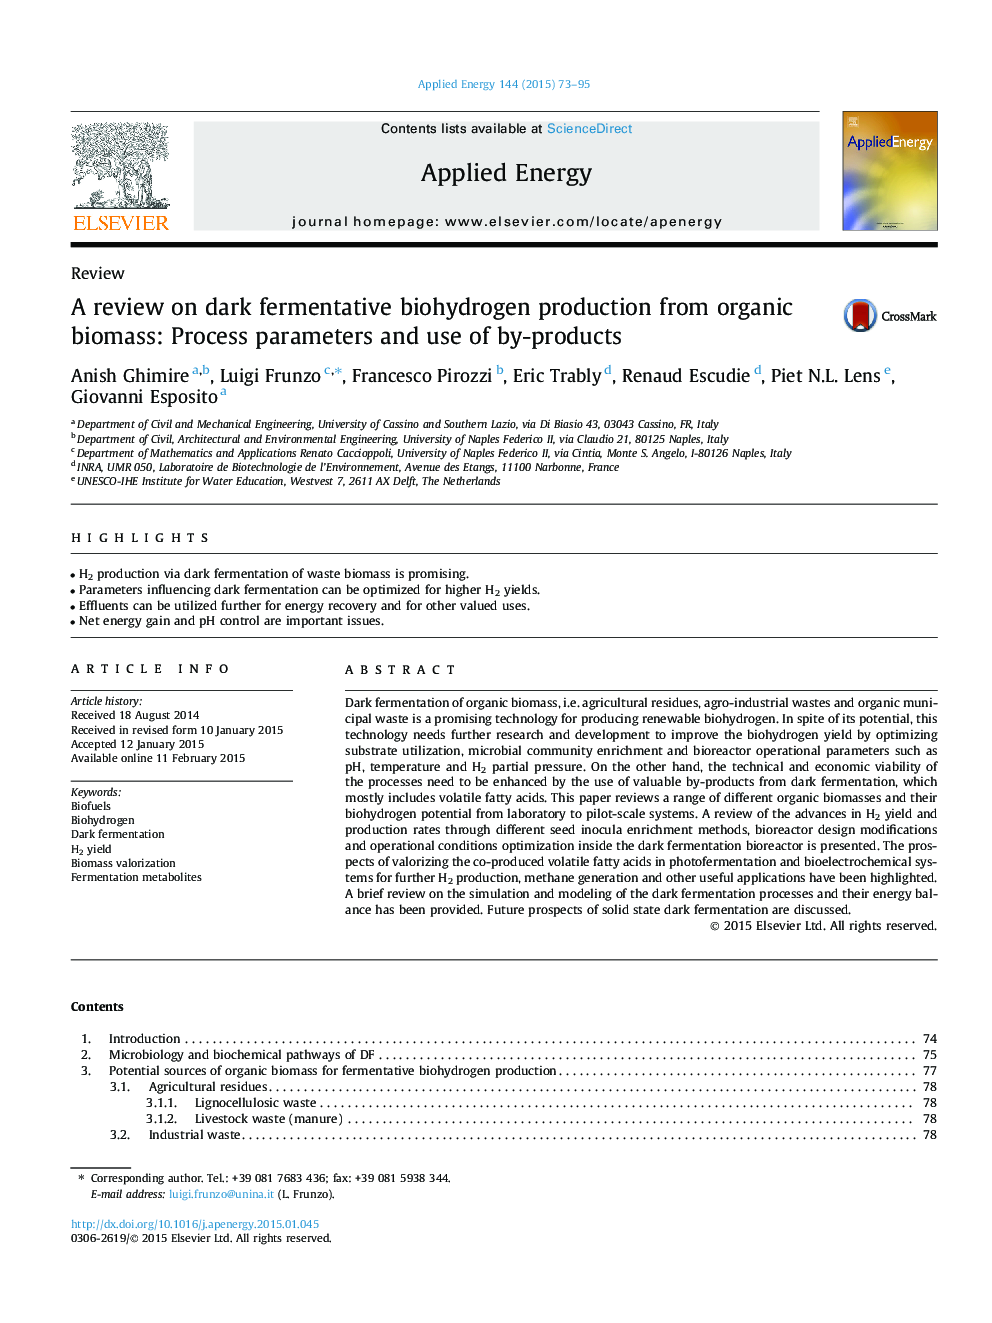 بررسی در تولید بیوشیمی از طریق بیوماس آلی: پارامترهای فرایند و استفاده از محصولات جانبی 